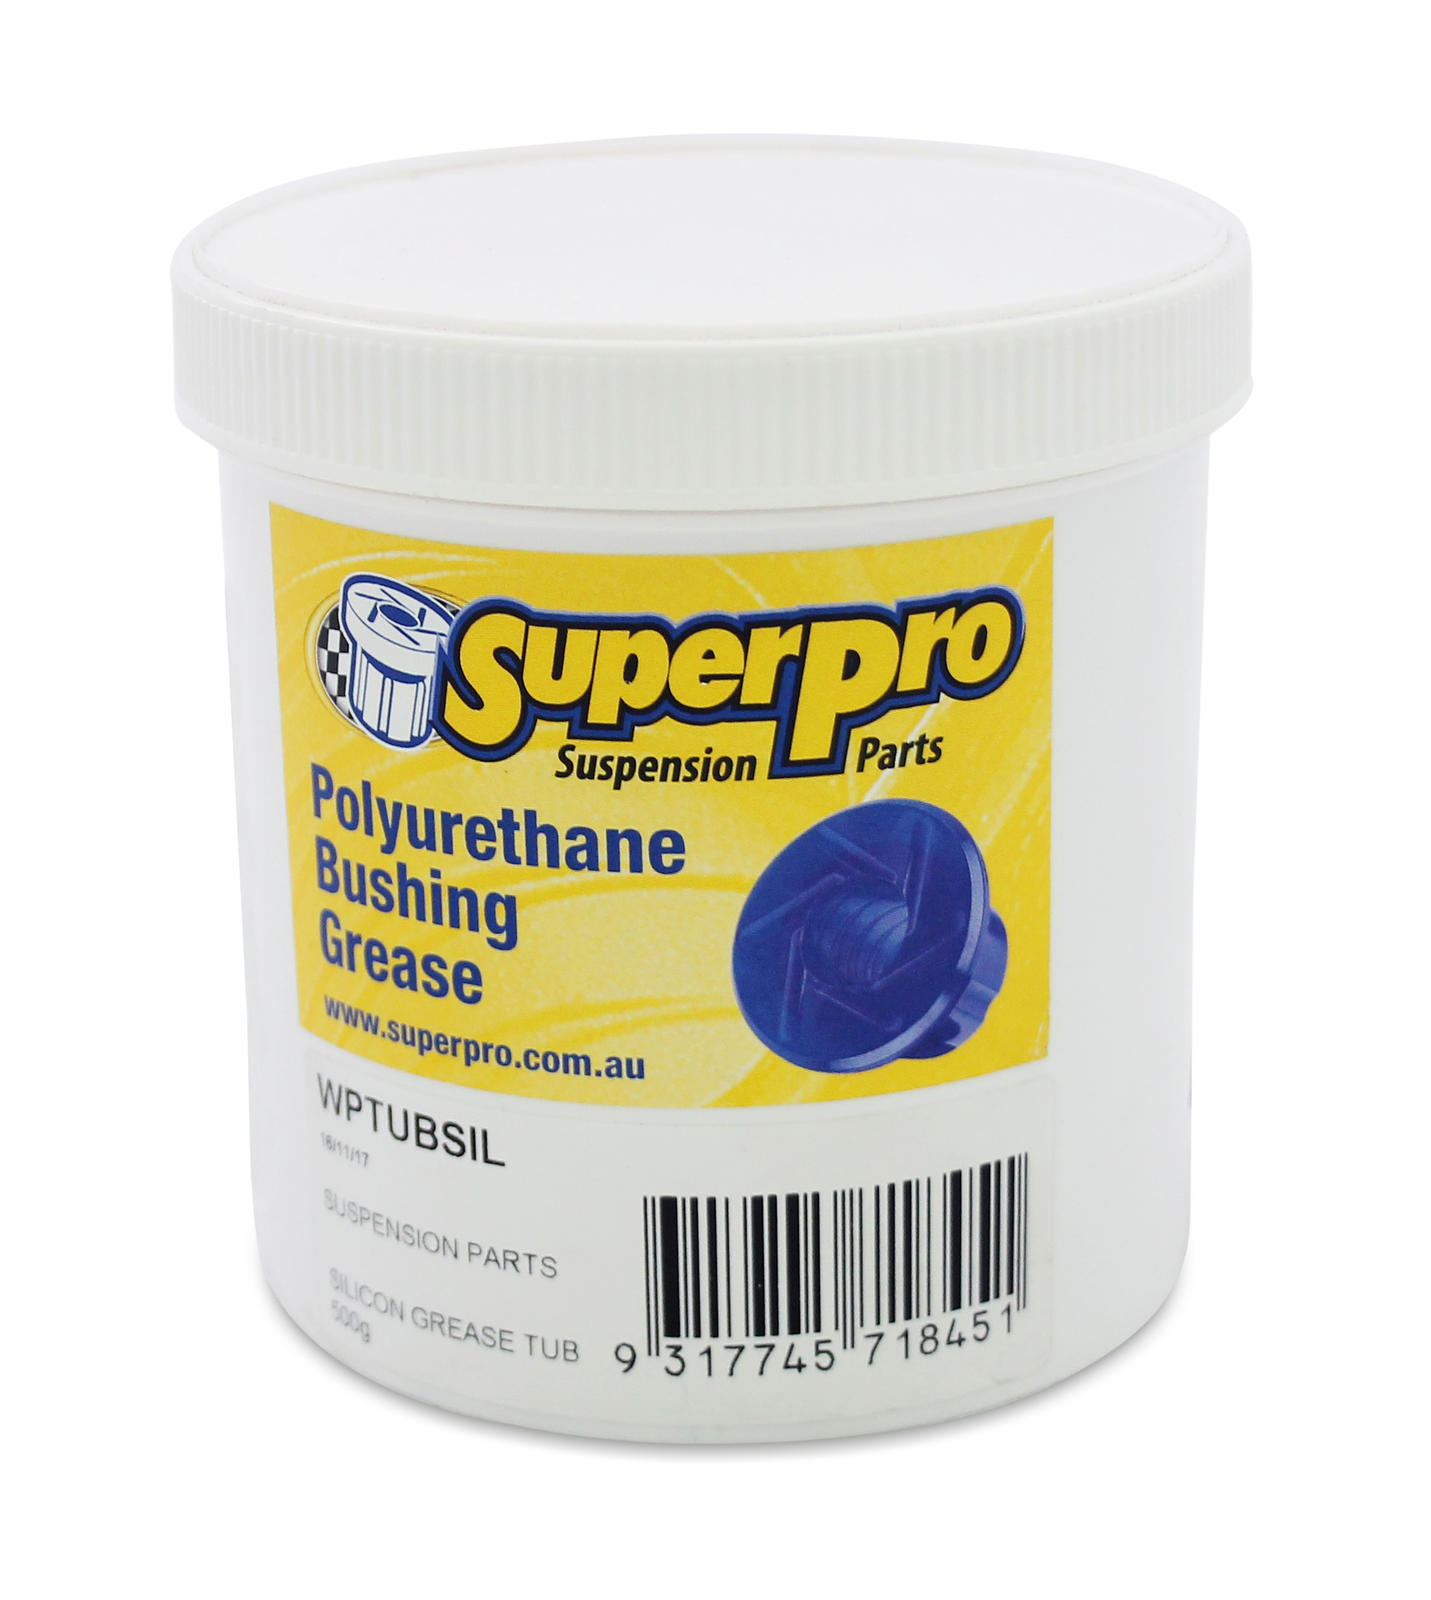 SuperPro Grease Tub 500g